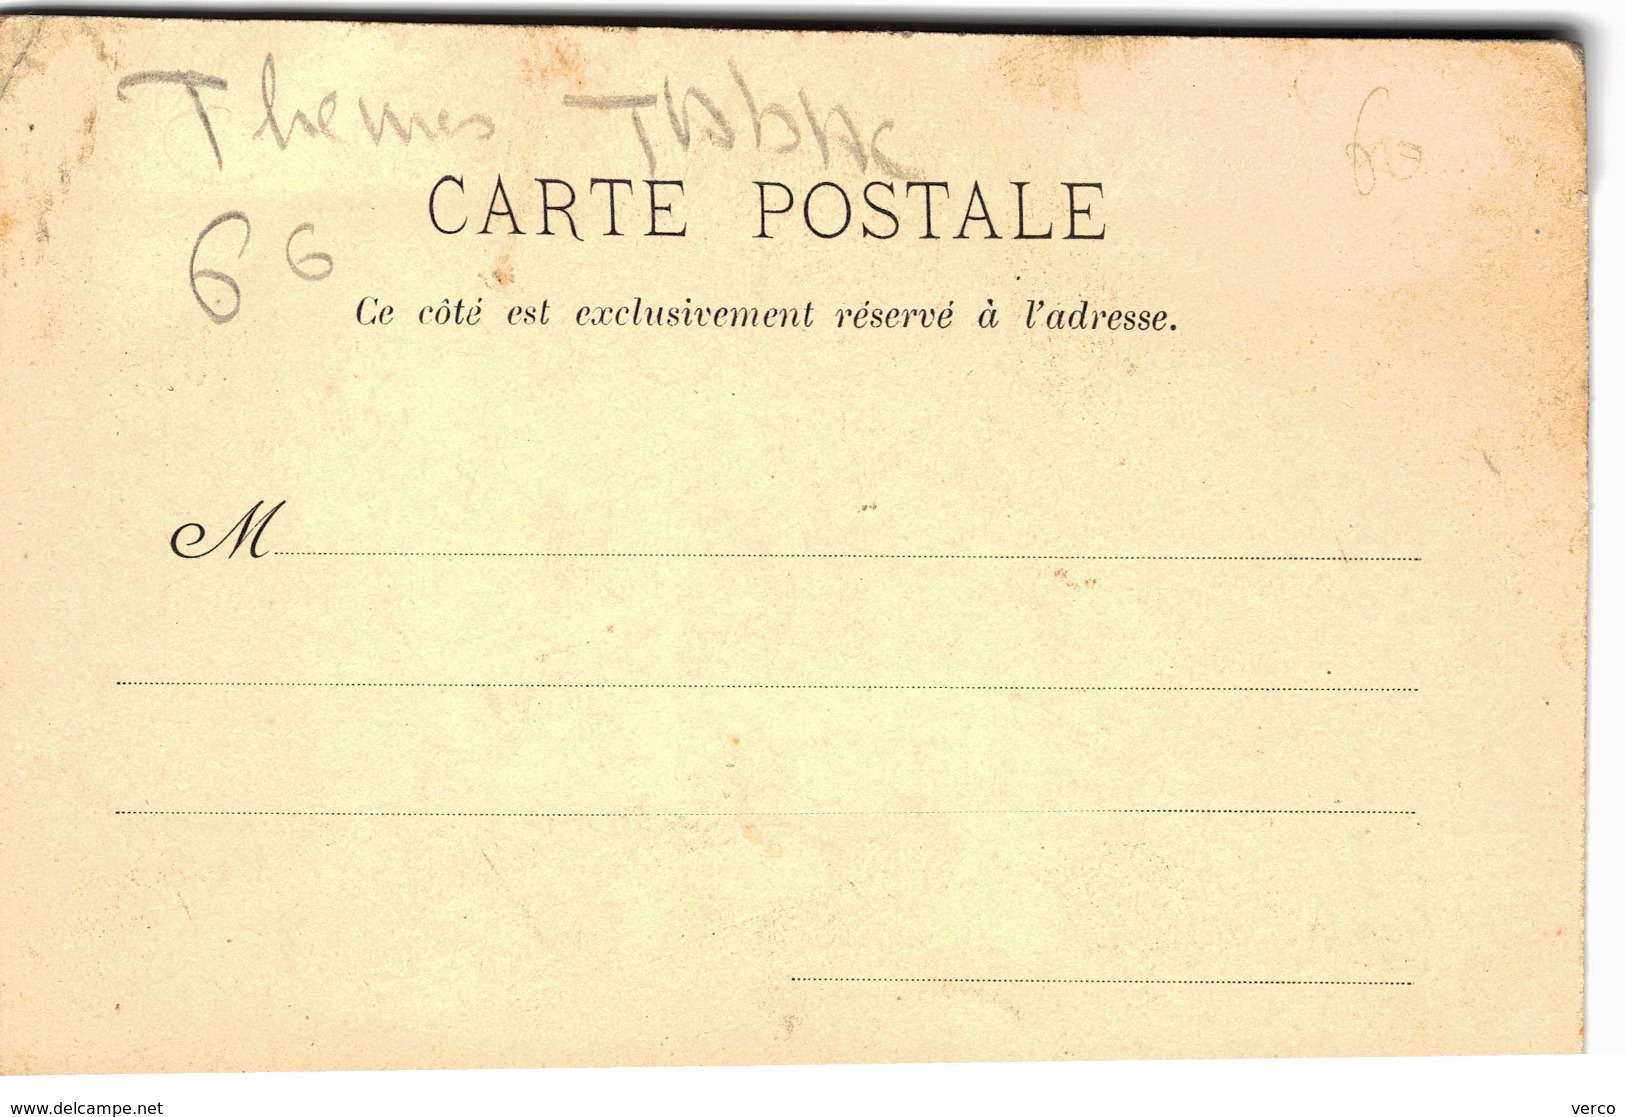 Carte Postale Ancienne De TABAC - Tabaco